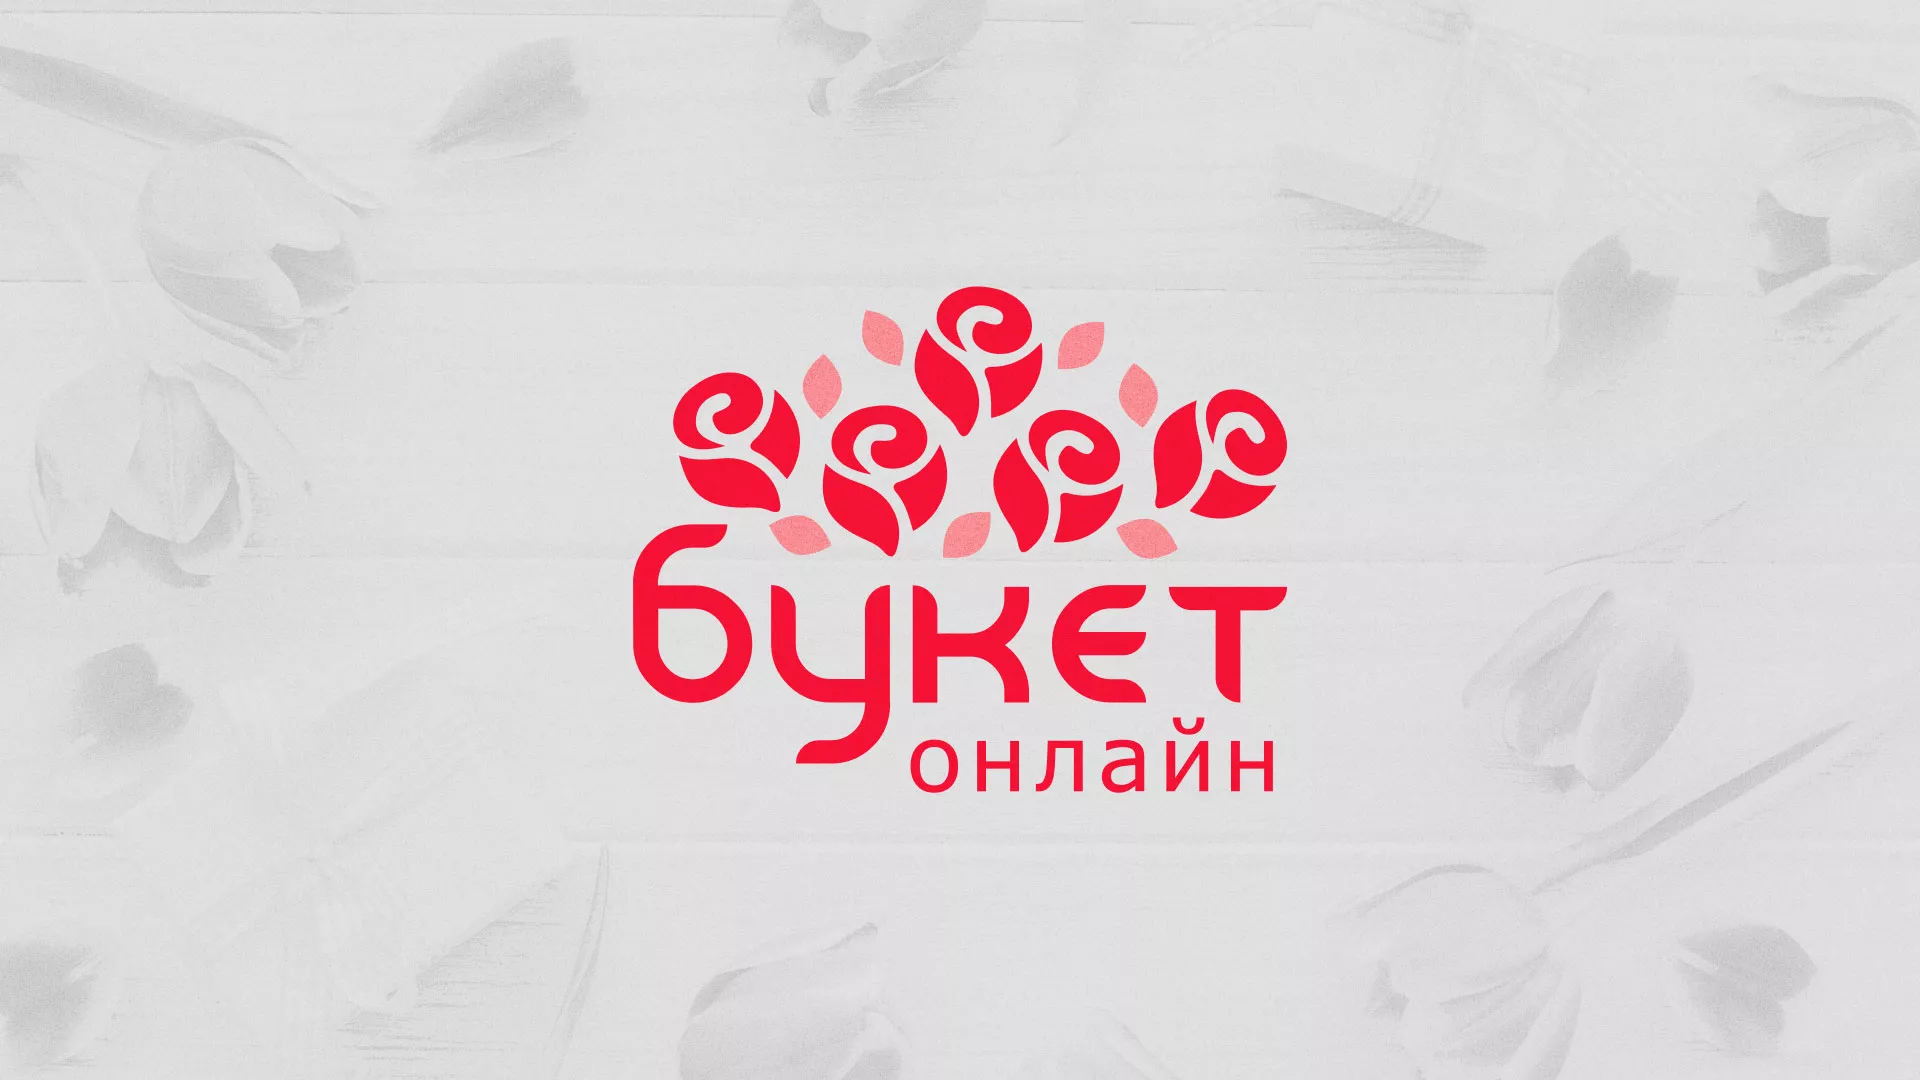 Создание интернет-магазина «Букет-онлайн» по цветам в Вязниках